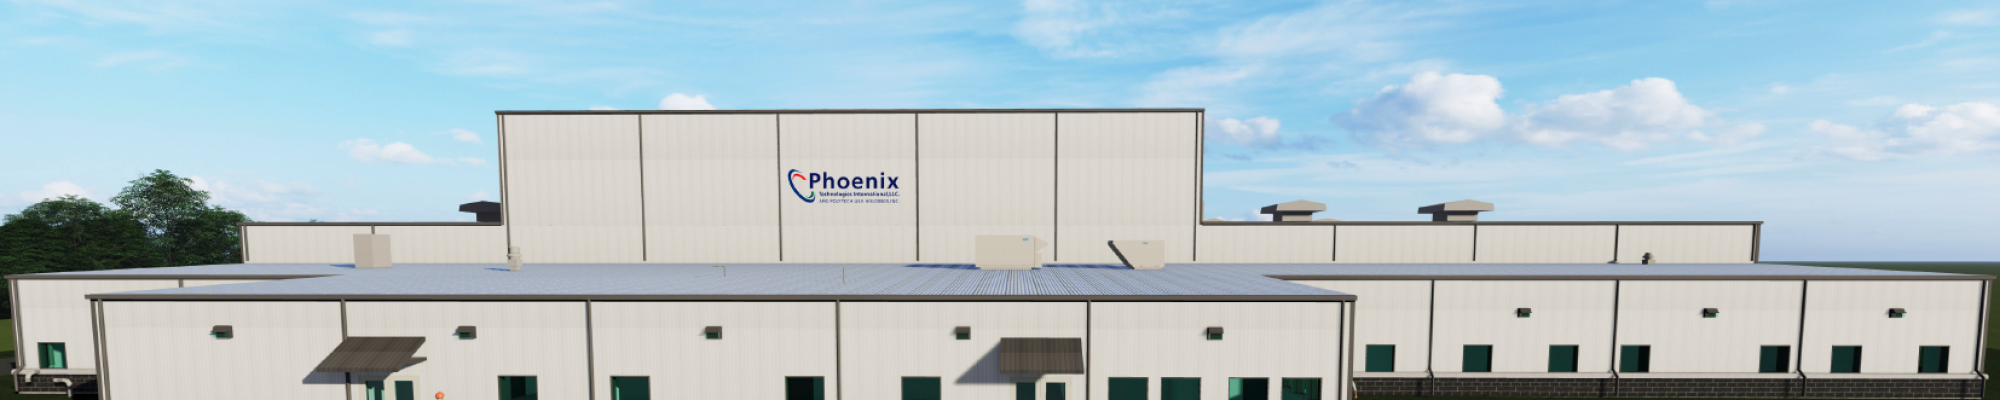 Phoenix Technologies Render 3